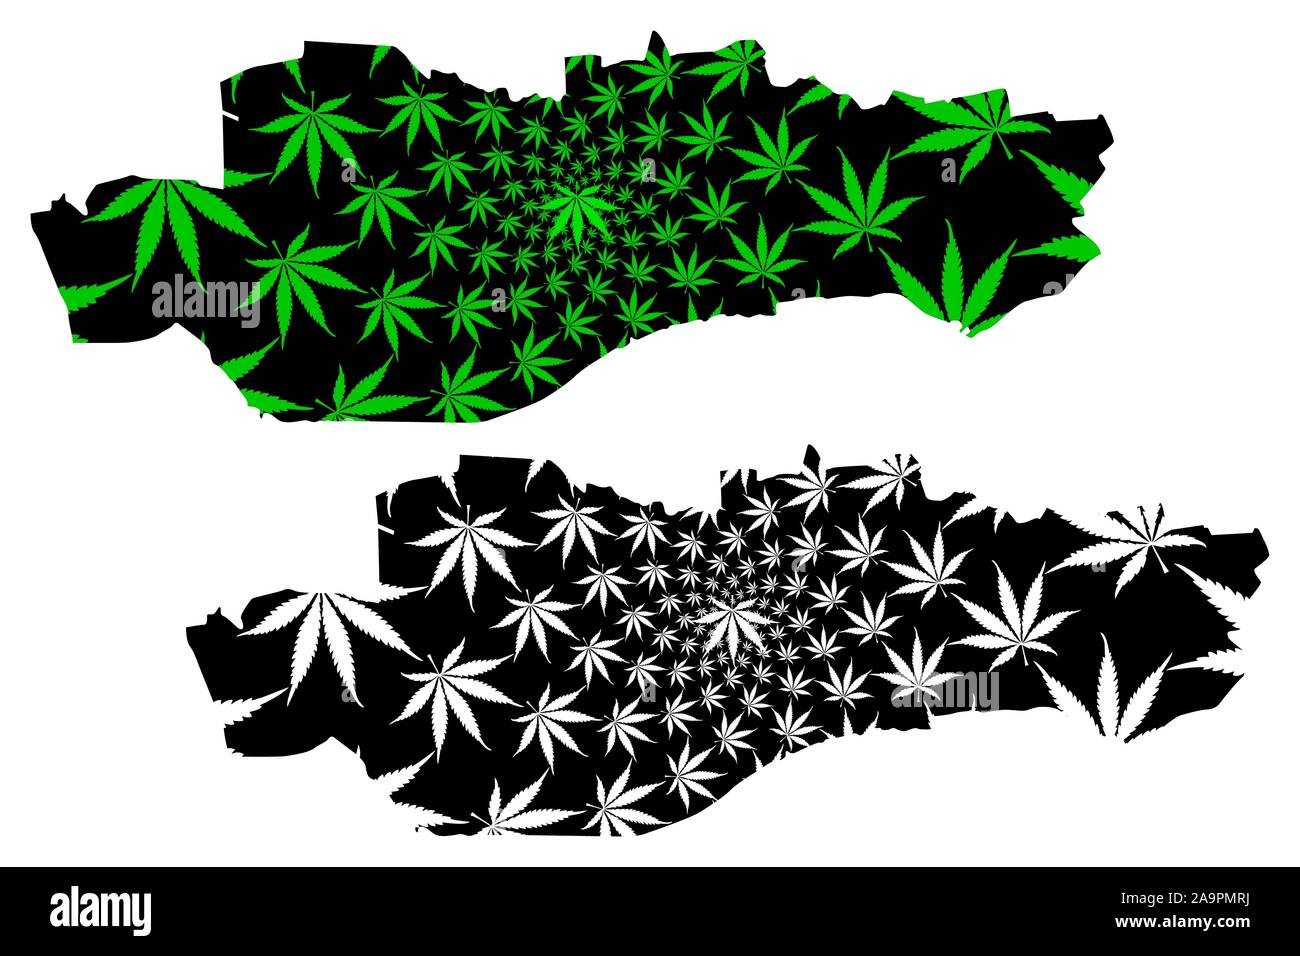 Dundee (Vereinigtes Königreich, Schottland, lokale Regierung in Schottland) Karte ist so konzipiert, dass Cannabis blatt grün und schwarz, Stadt und Rat, Dundee Karte gemacht o Stock Vektor